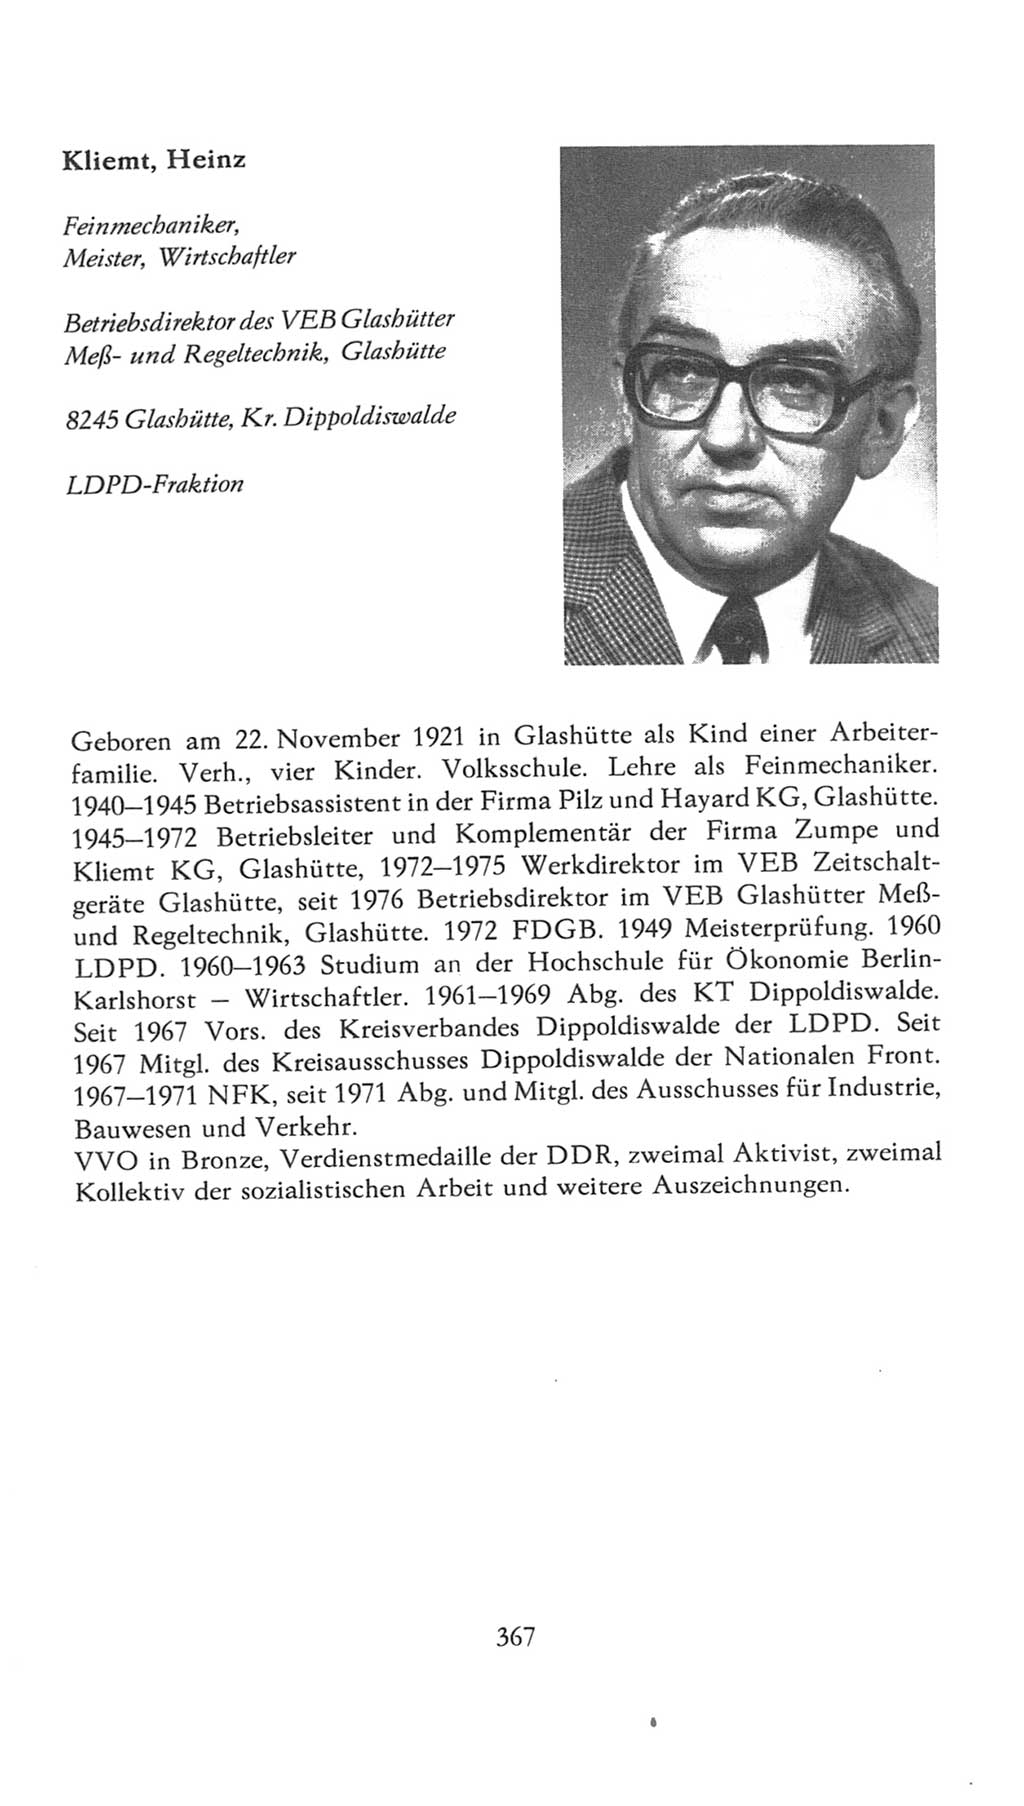 Volkskammer (VK) der Deutschen Demokratischen Republik (DDR), 7. Wahlperiode 1976-1981, Seite 367 (VK. DDR 7. WP. 1976-1981, S. 367)